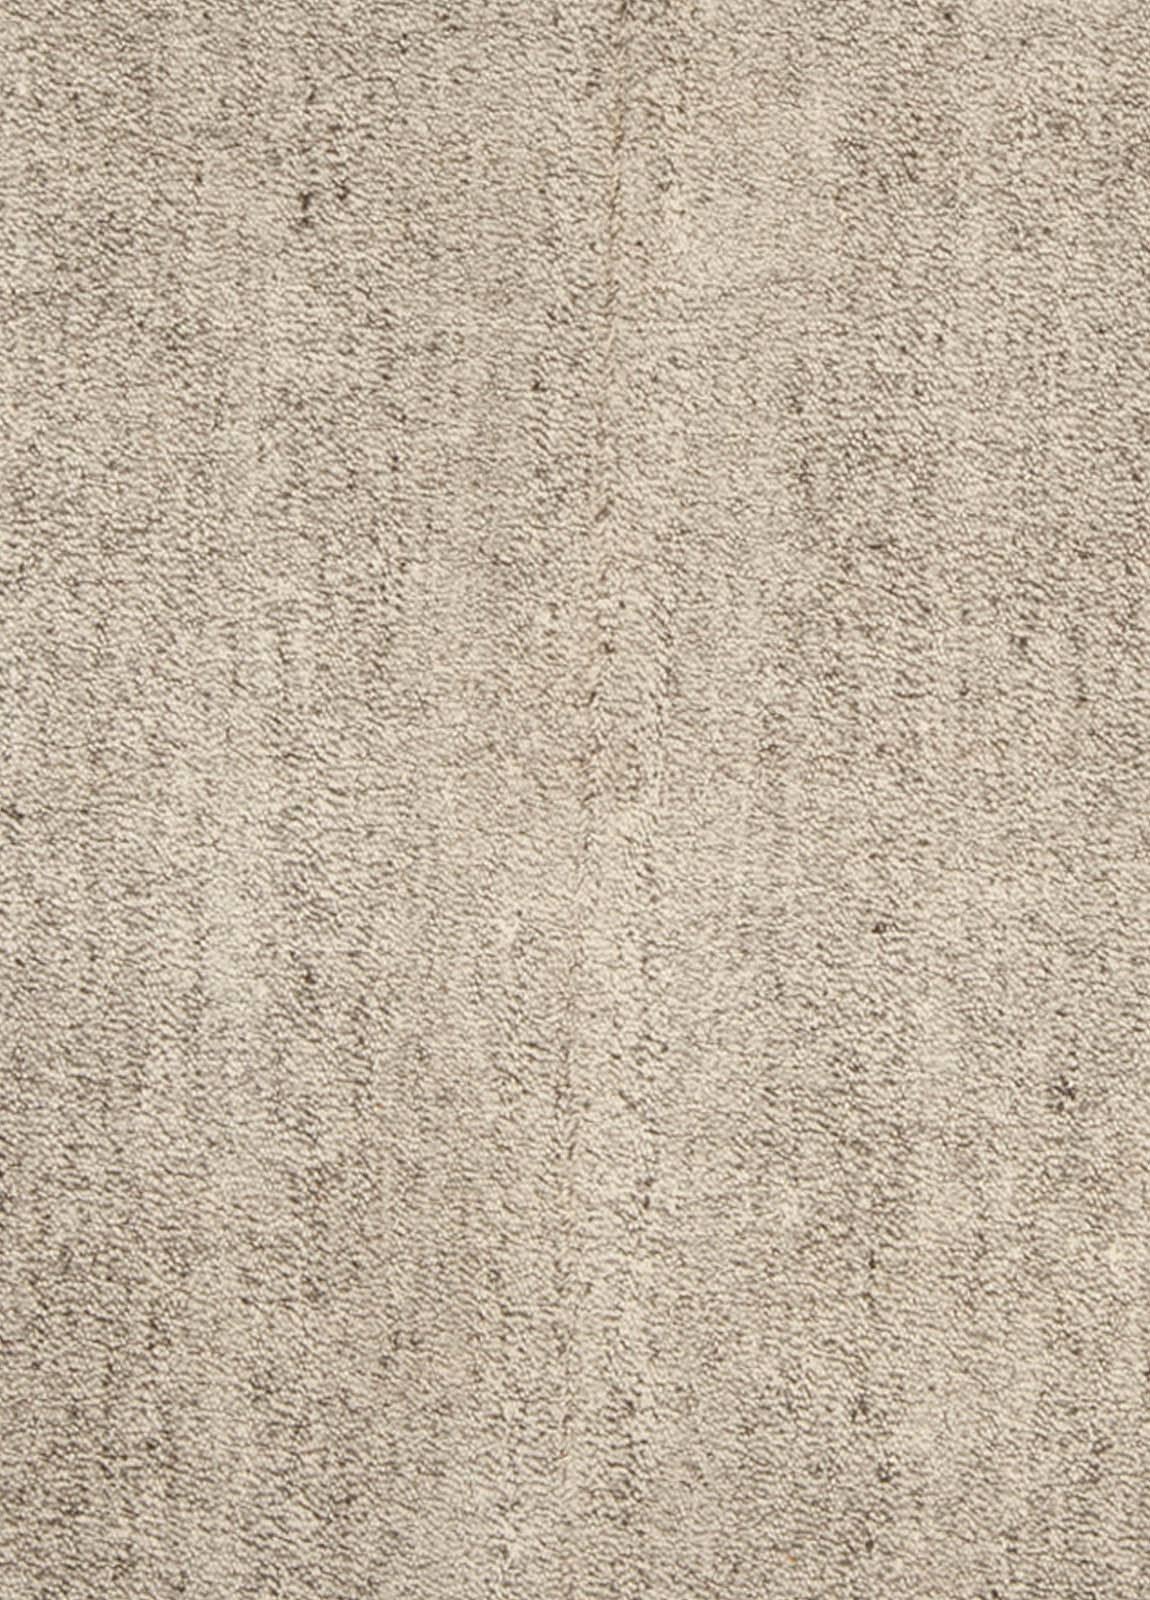 Modern Persian beige and grey handmade wool kilim rug by Dorie Leslie Blau.
Size: 6'8